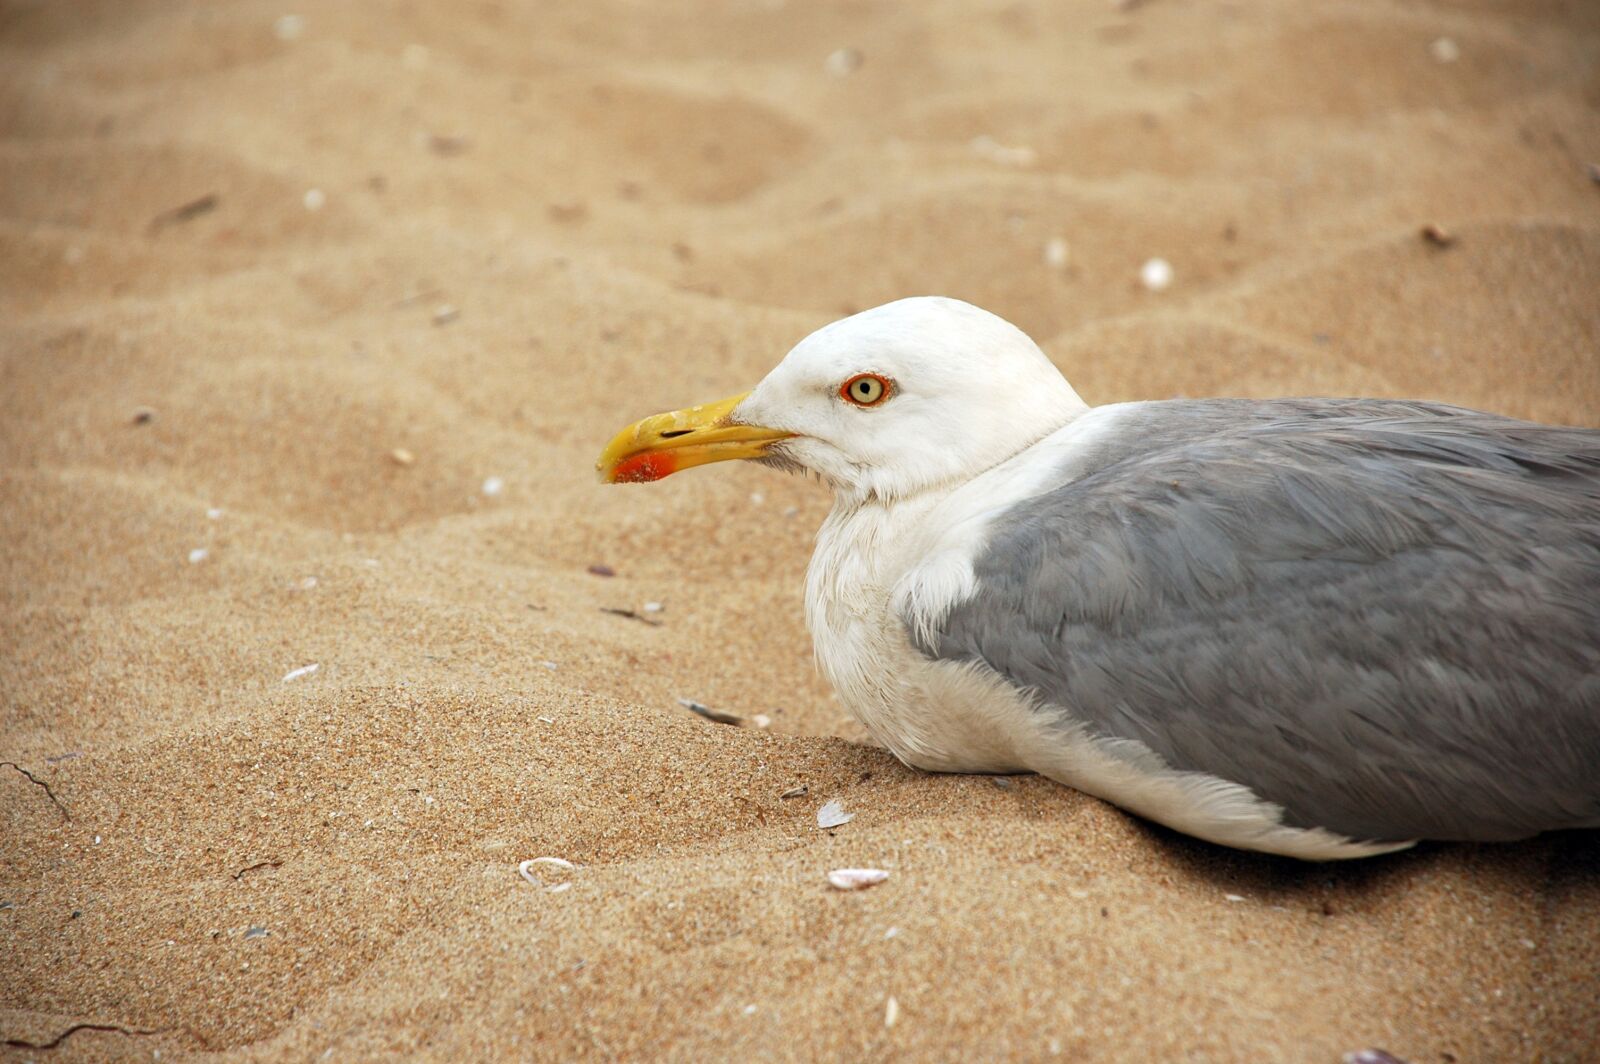 Nikon D70 sample photo. Seagull, beach, sand photography